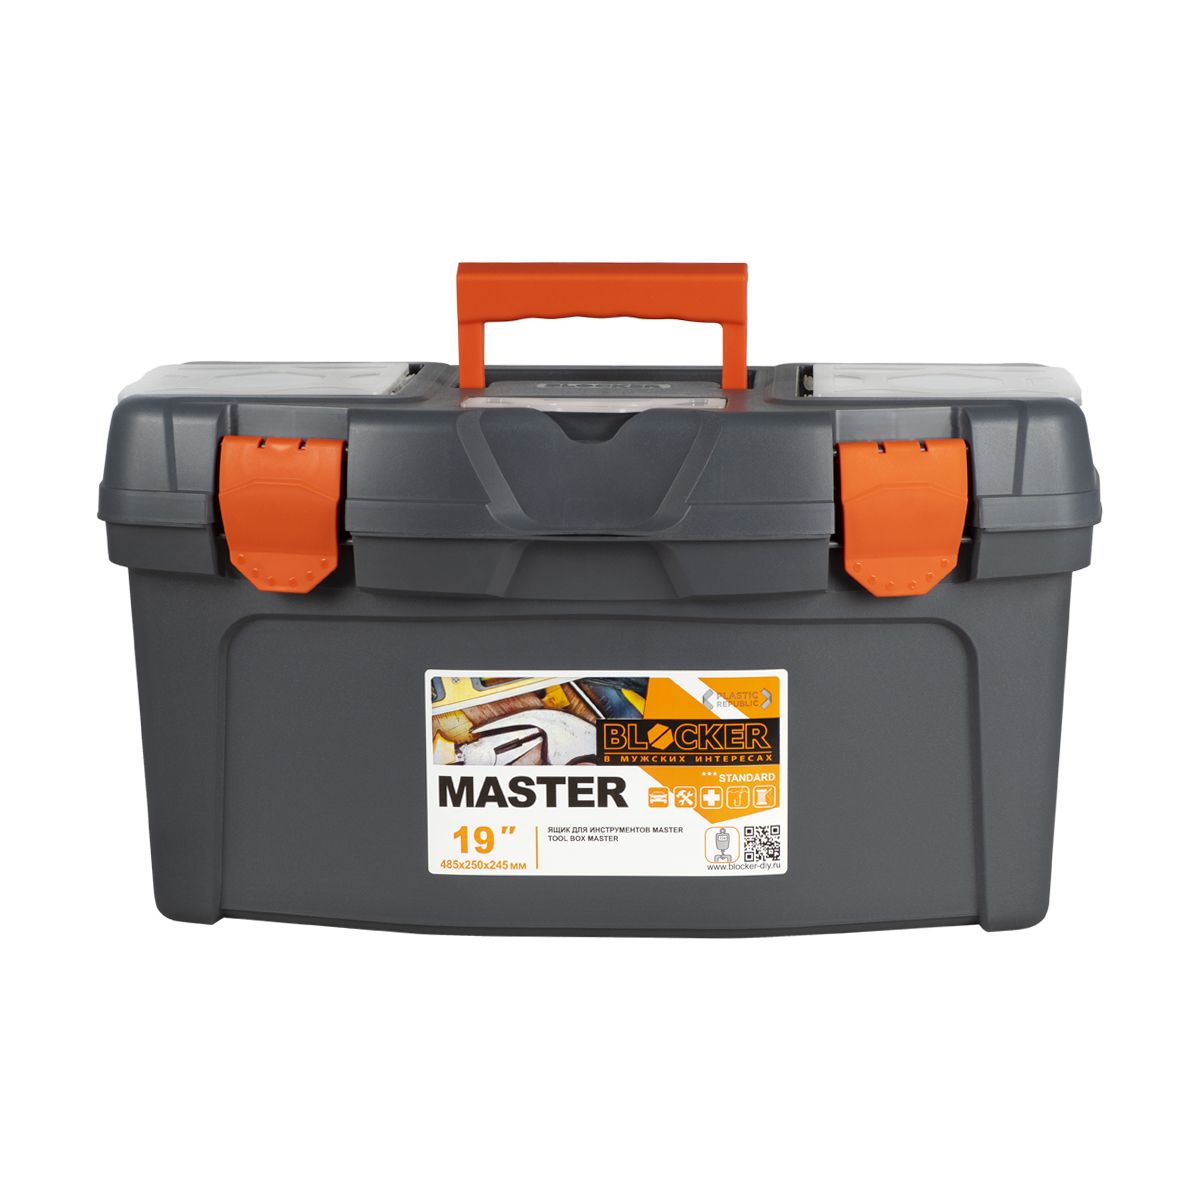 фото Ящик для инструментов blocker master, 48,5 x 26 x 25,8 см, серый